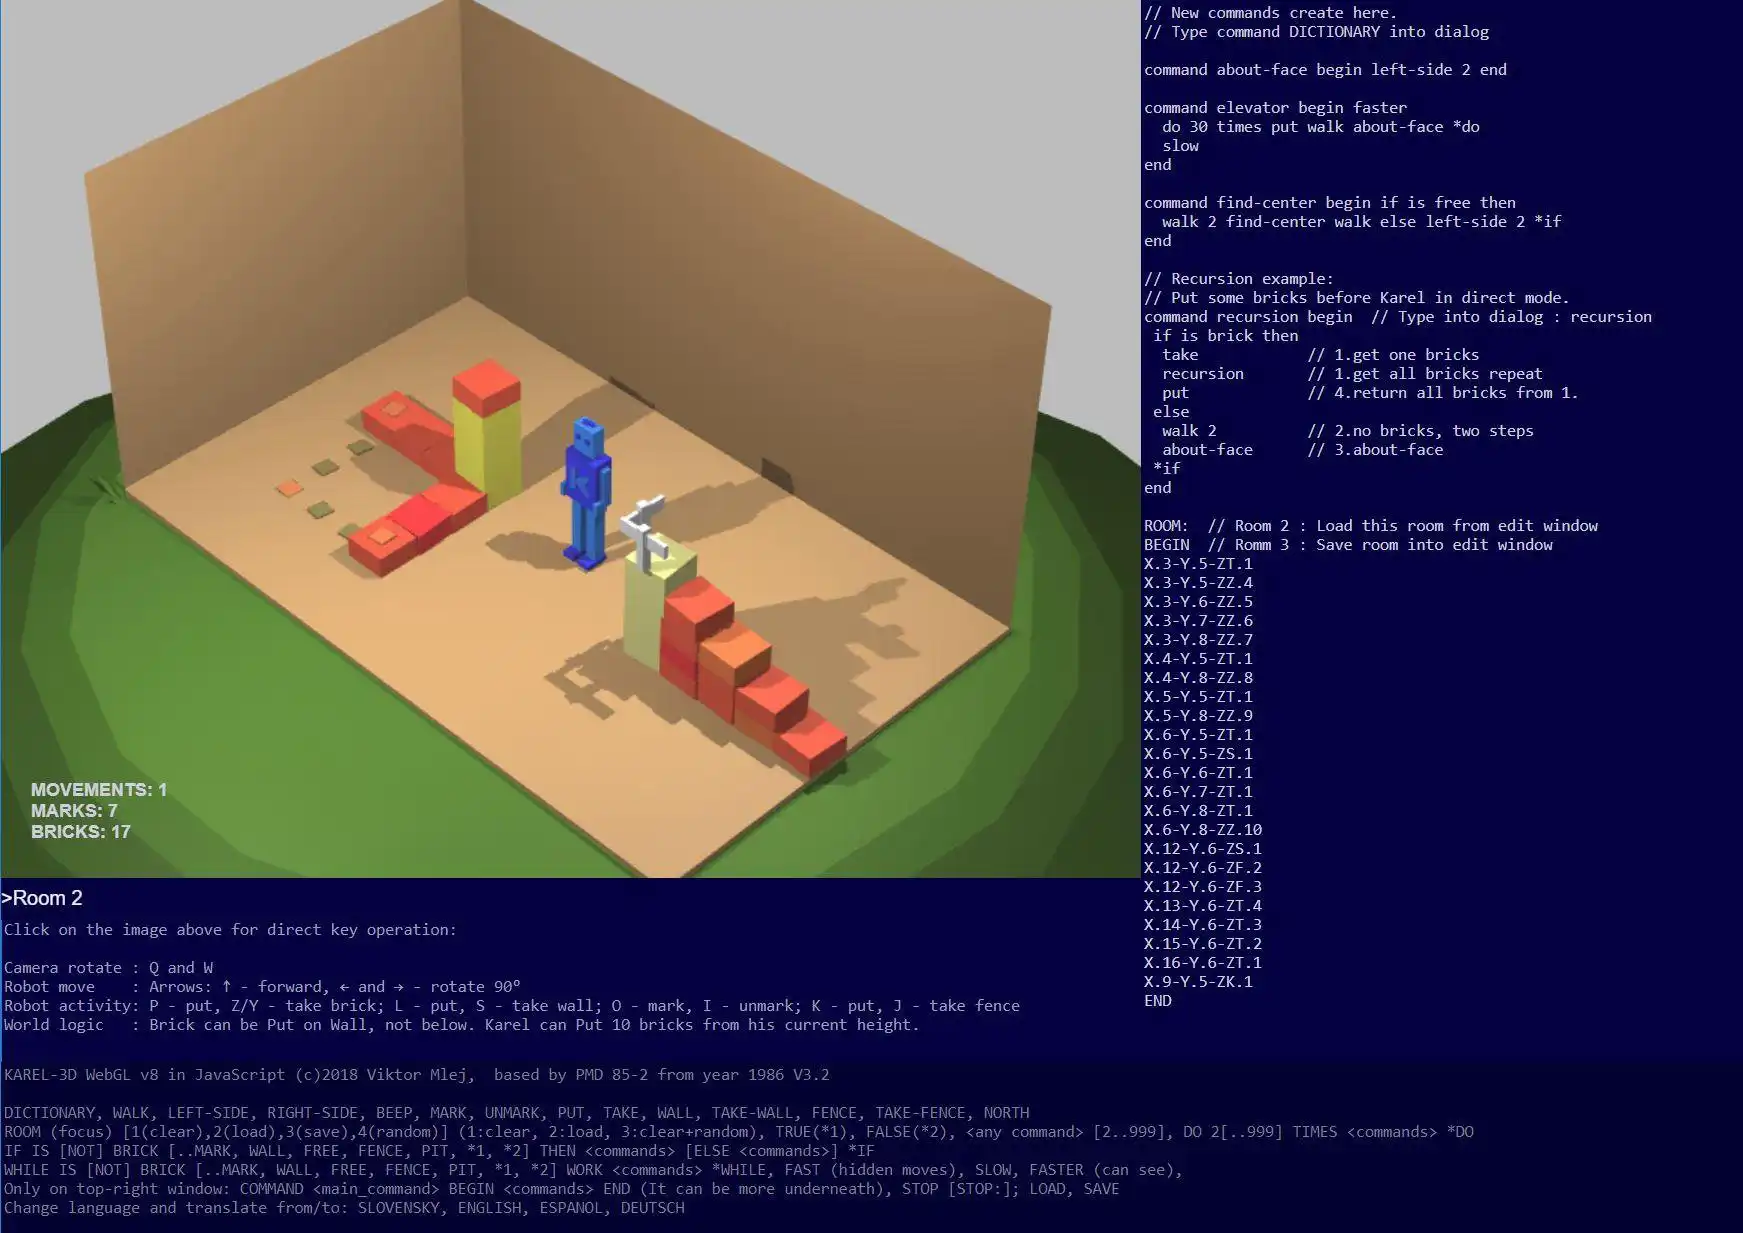 הורד את כלי האינטרנט או את אפליקציית האינטרנט KAREL 3D WebGL כדי לפעול ב-Linux באופן מקוון